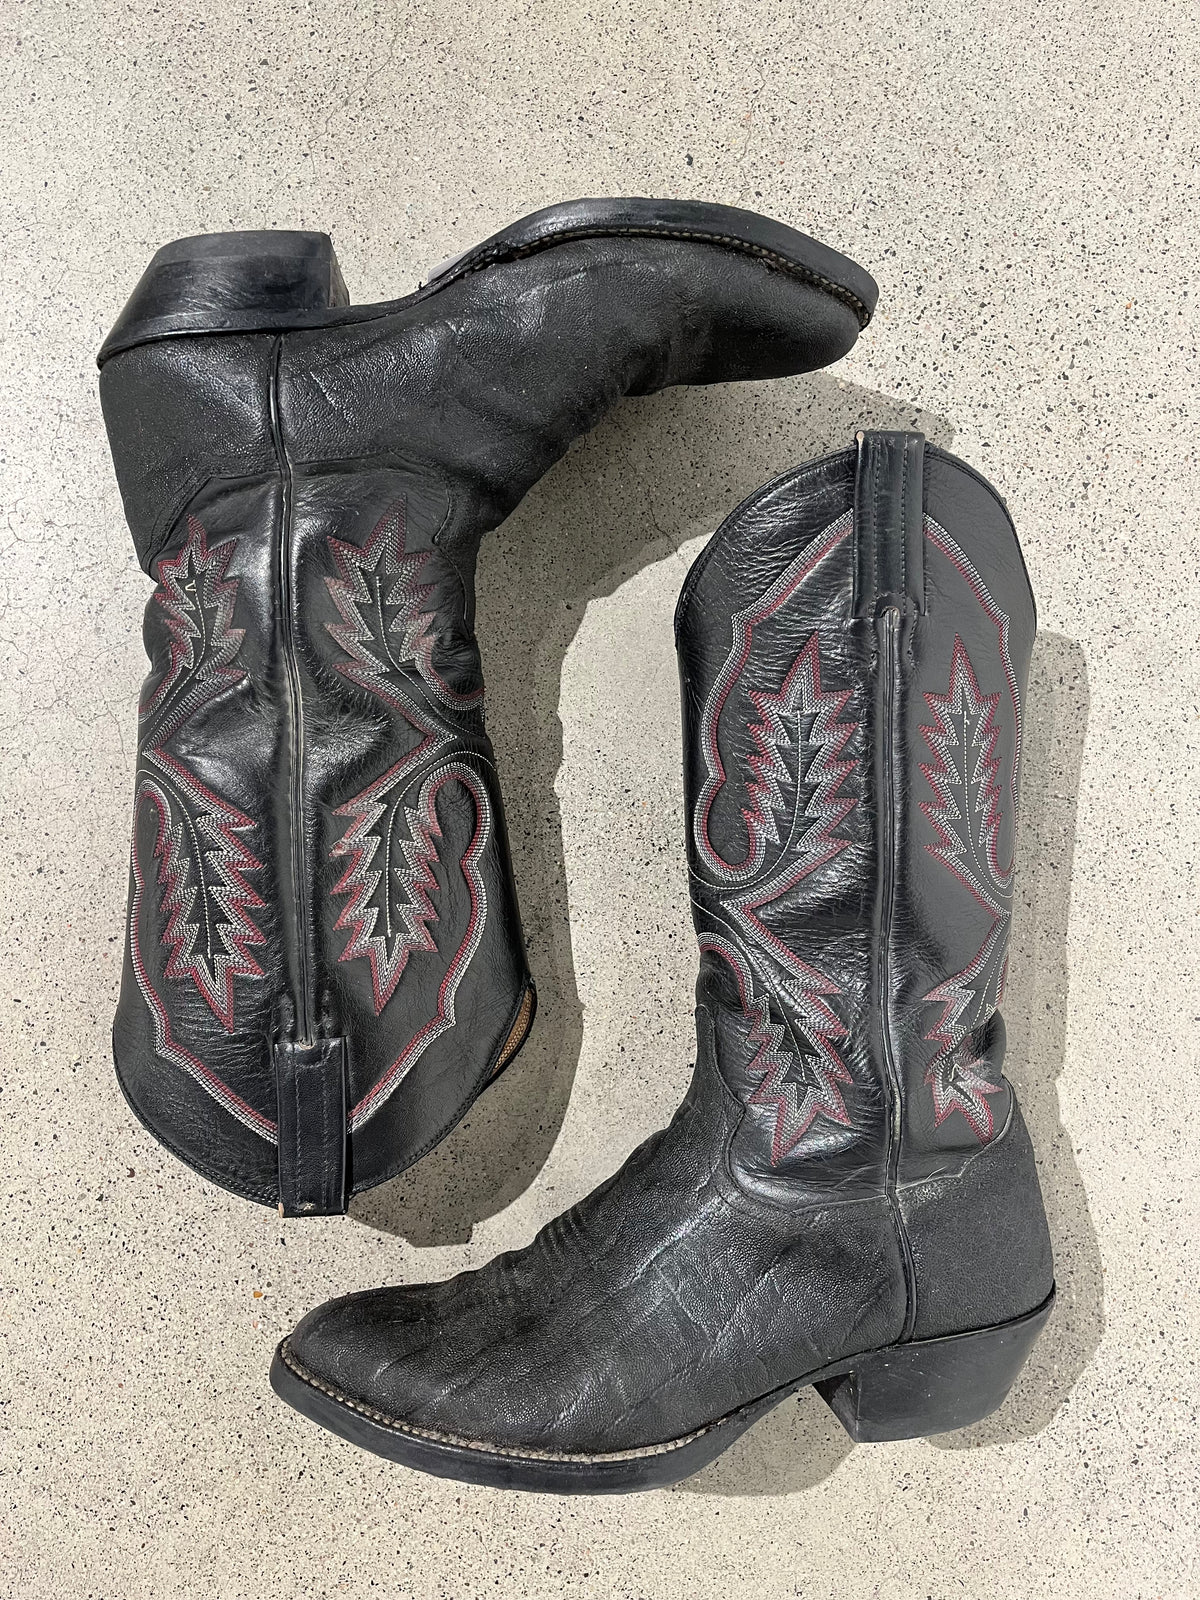 Rare Leather Vintage Cowboy Boots